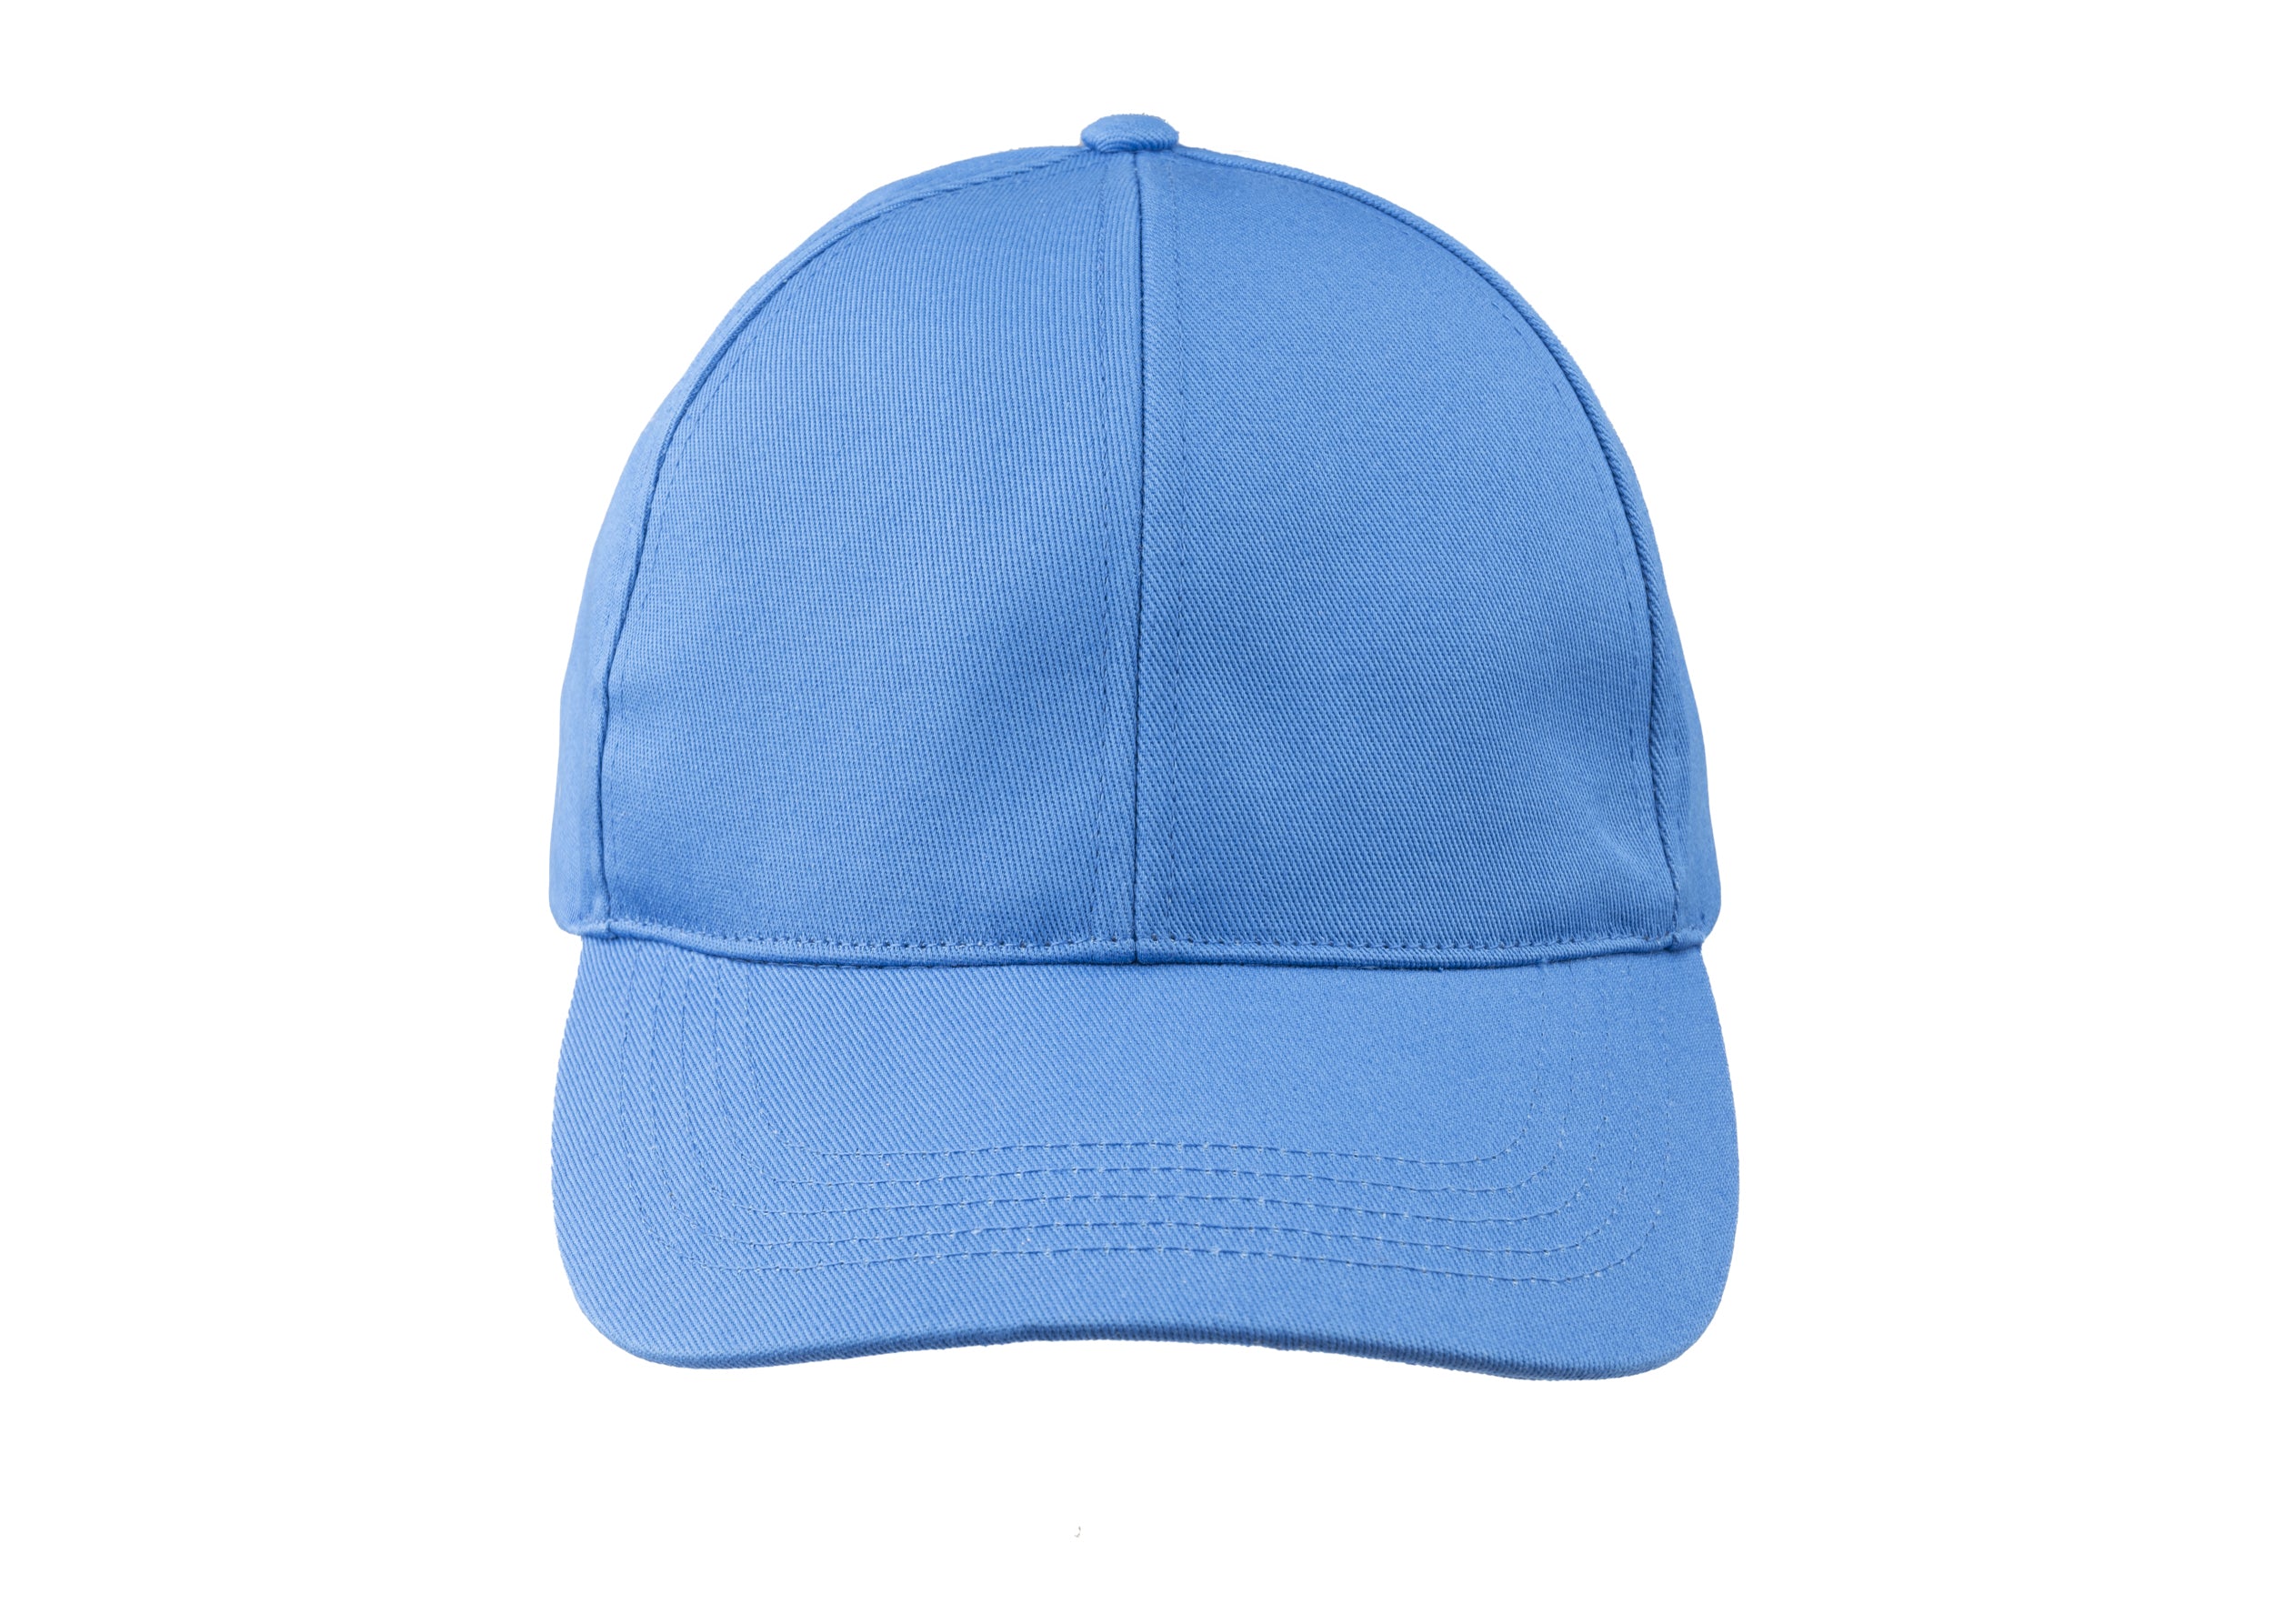 Baseball Summer Cotton Cap Blue